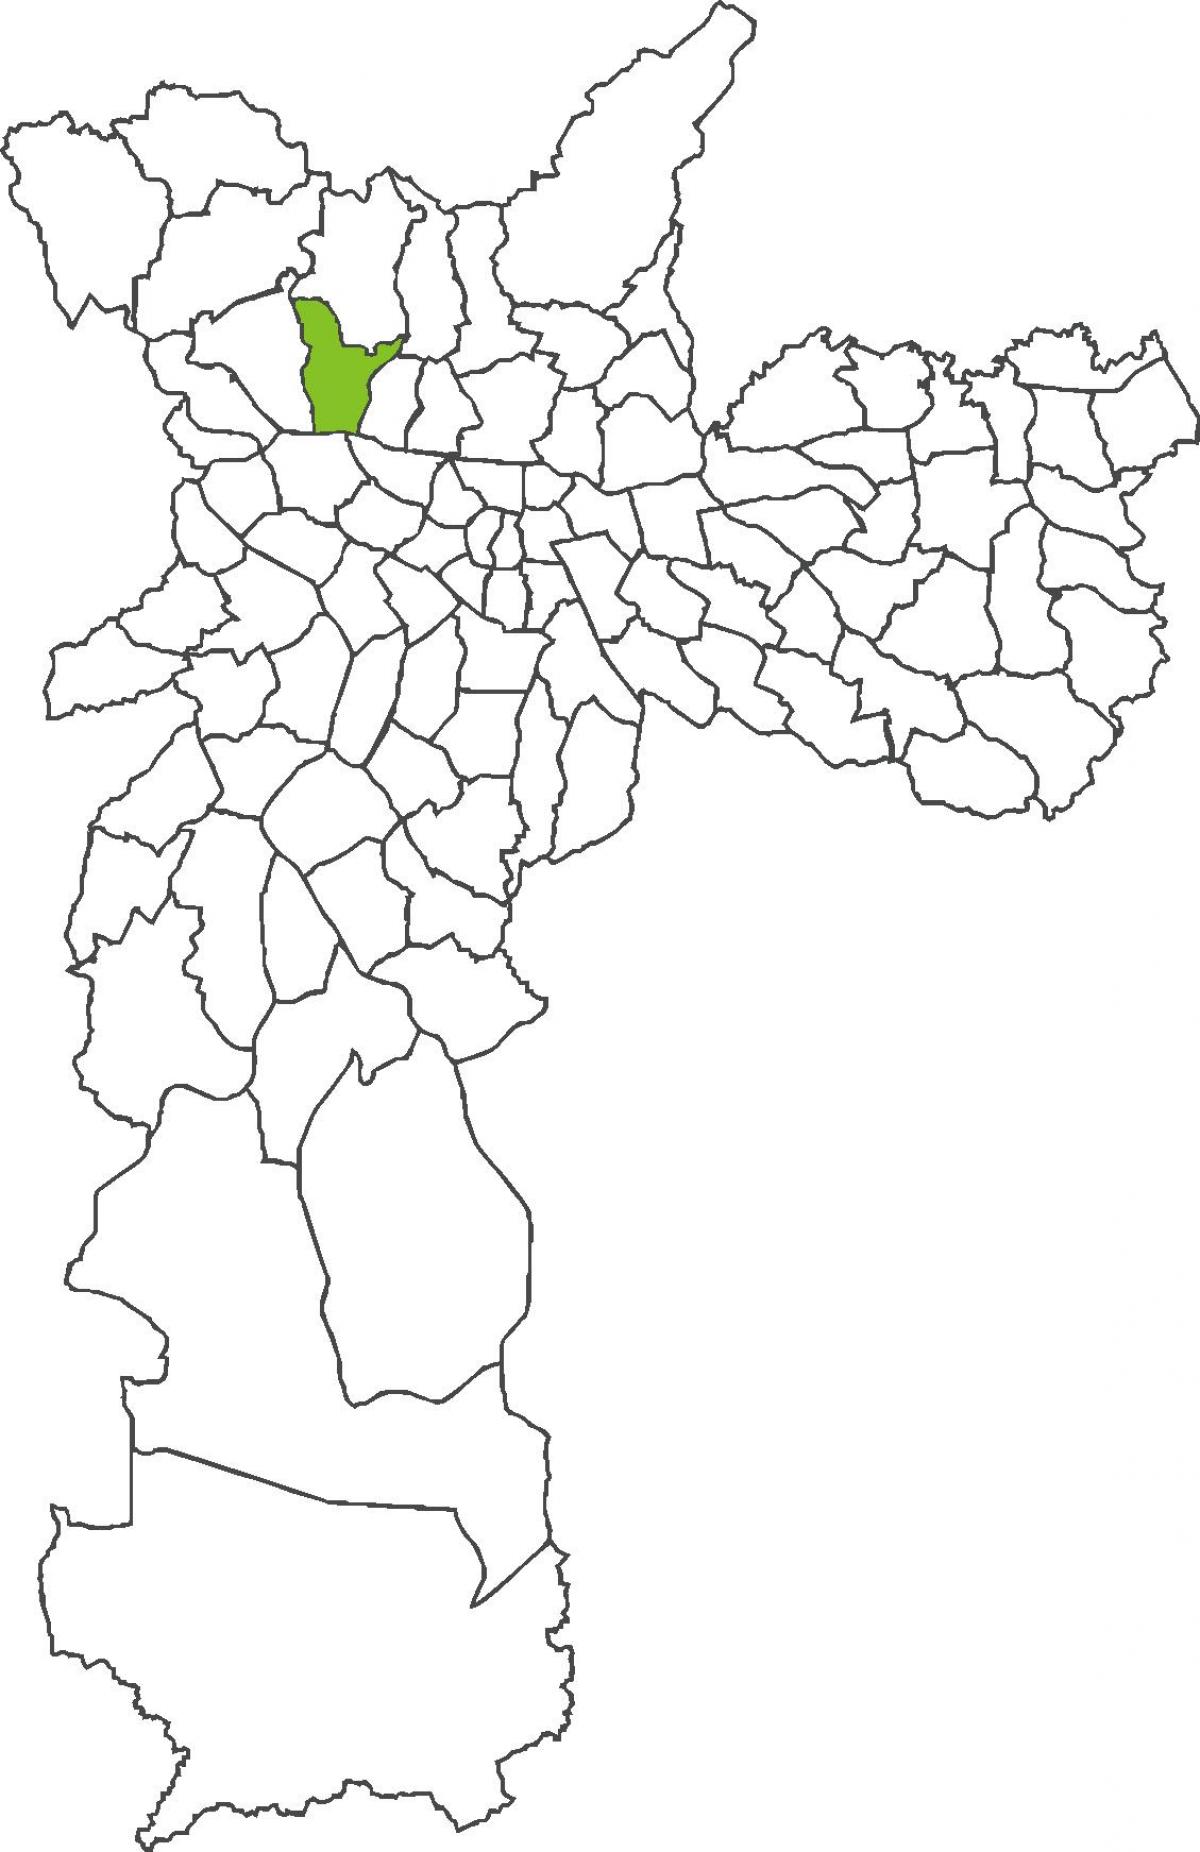 Mapa de Freguesia do Ó distrito